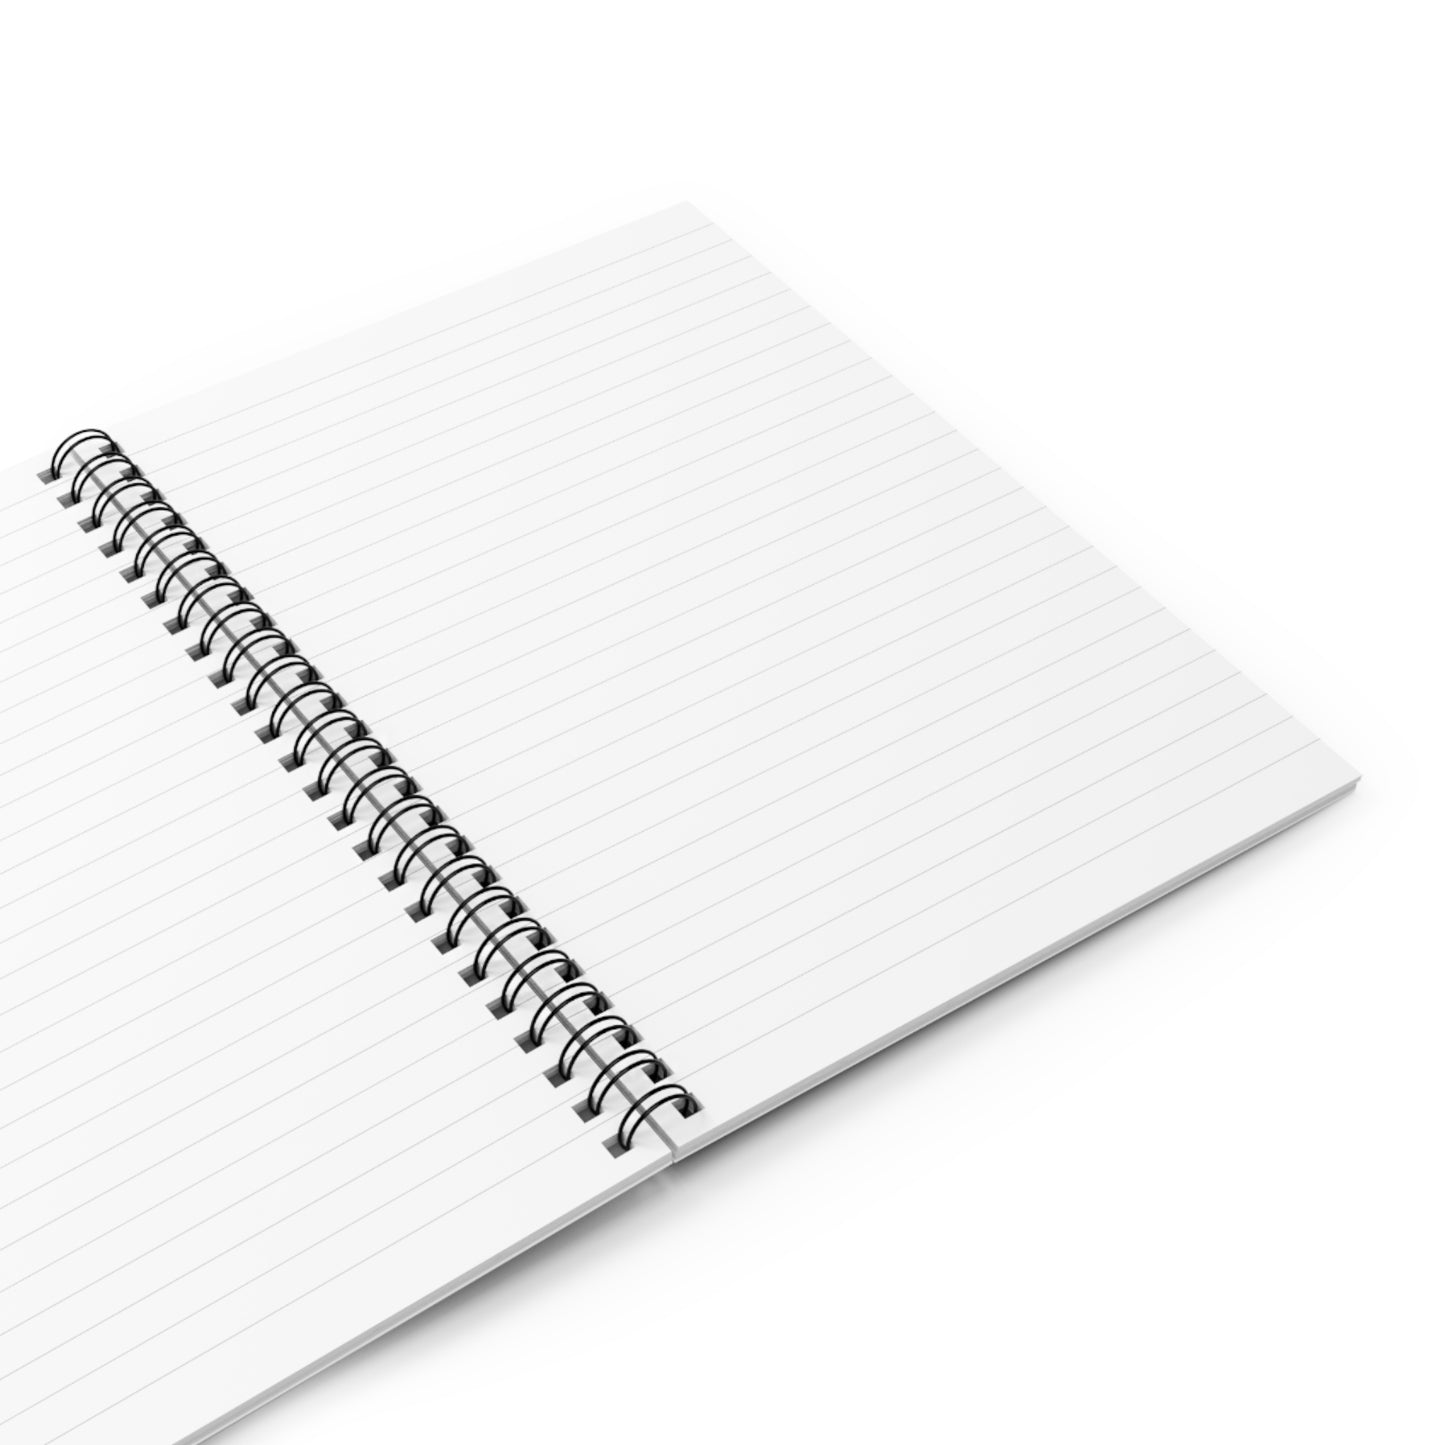 VSU Alumni Spiral Notebook - Ruled Line